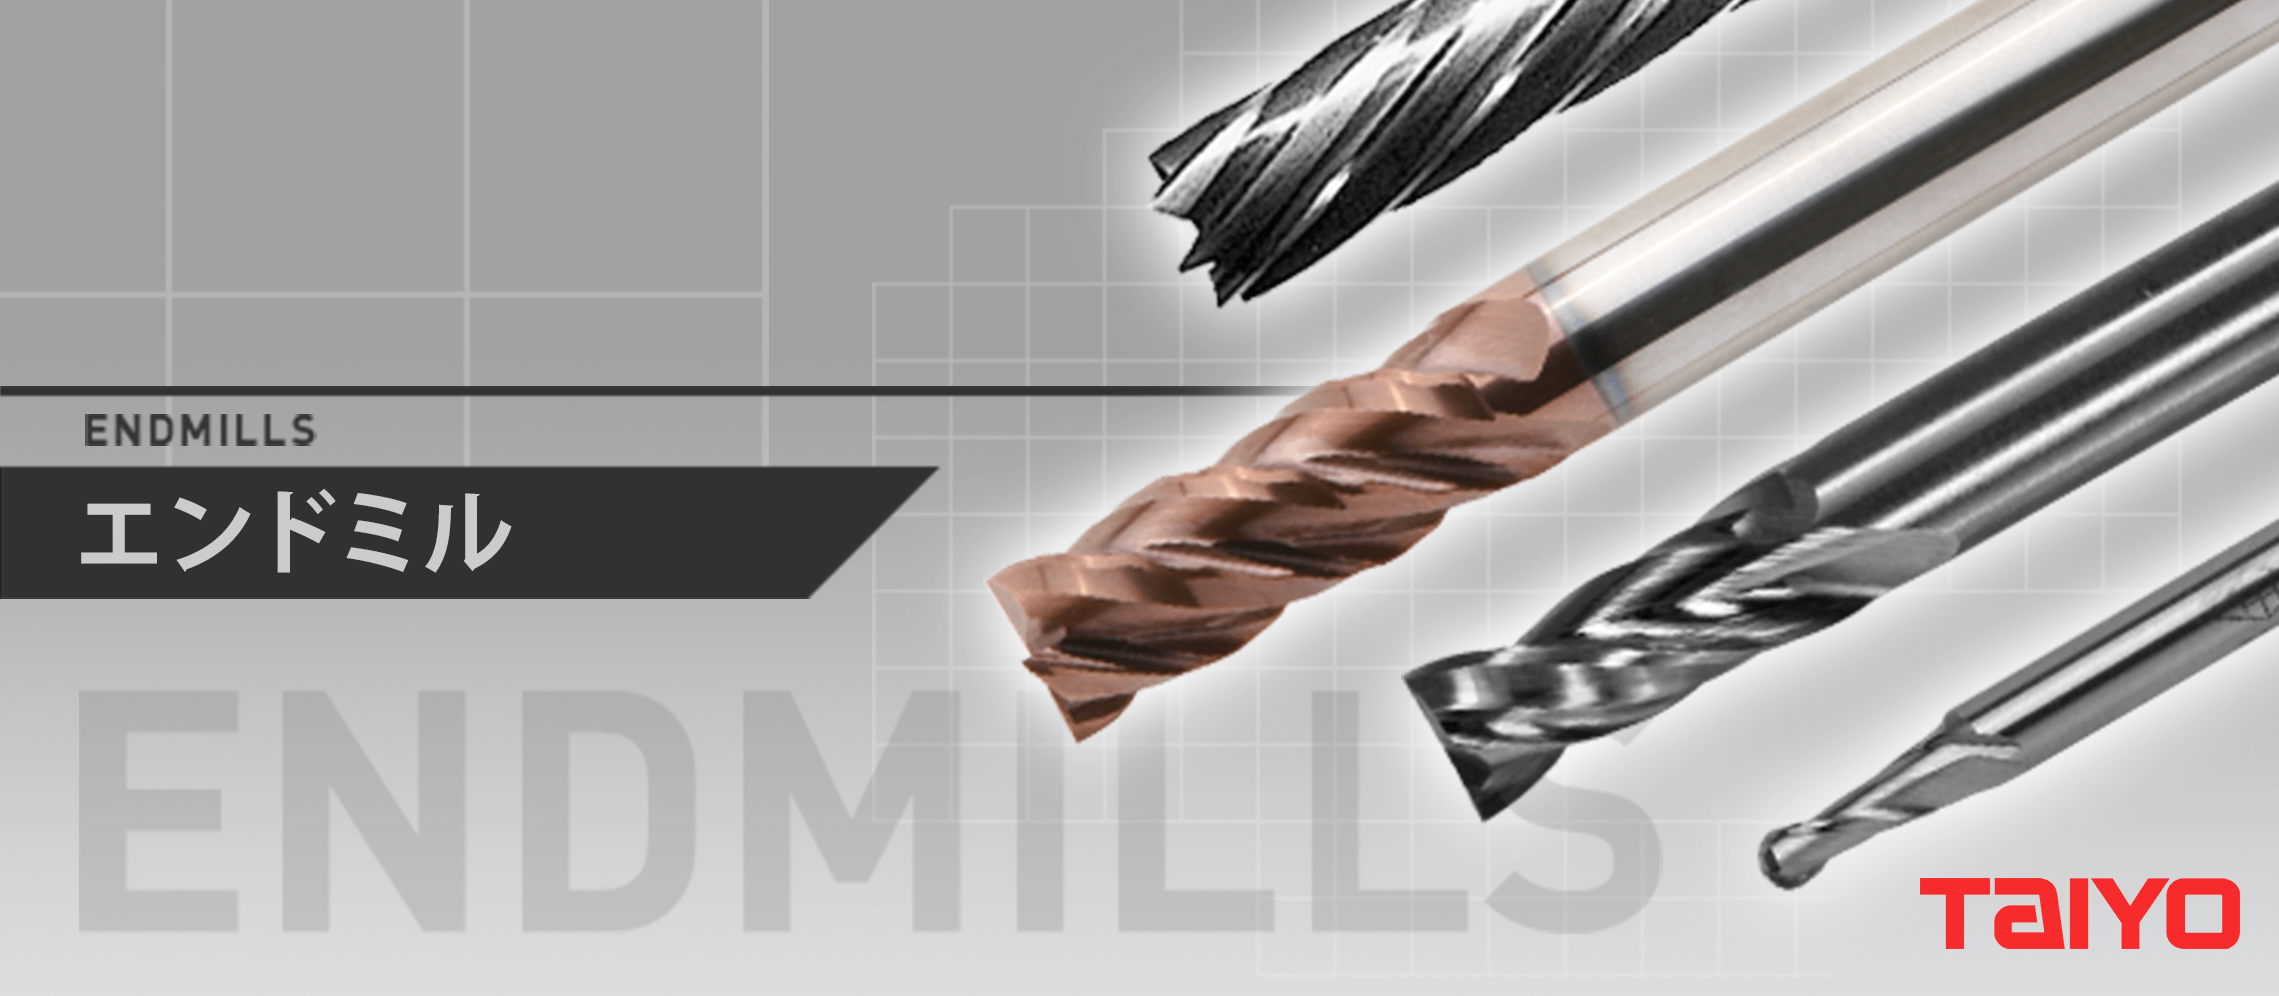 エンドミル - 大洋ツール株式会社 - ハイス工具、切削工具の設計、製作 